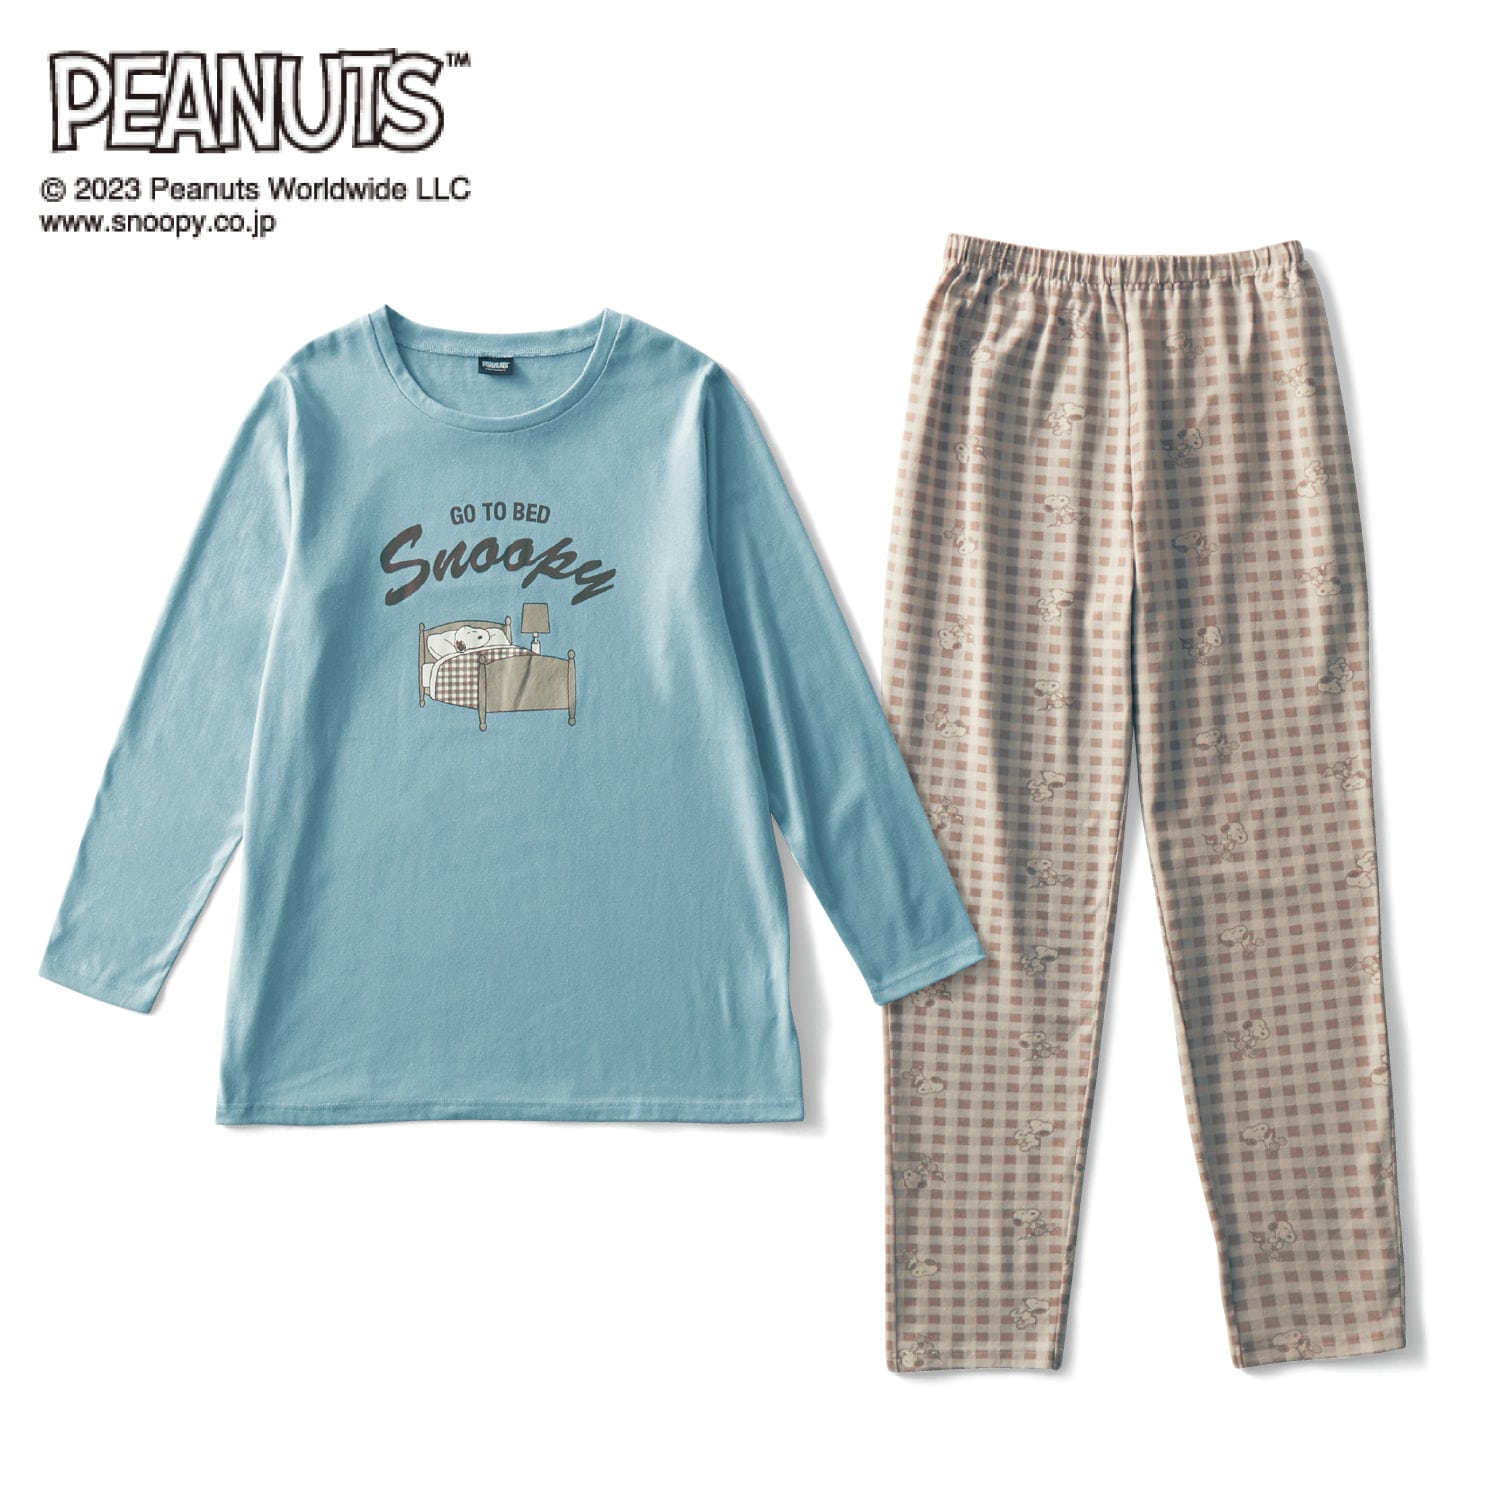 ベルメゾン PEANUTS レディースギンガムチェックプリントのパジャマ「スヌーピー」 グレイッシュブルー M